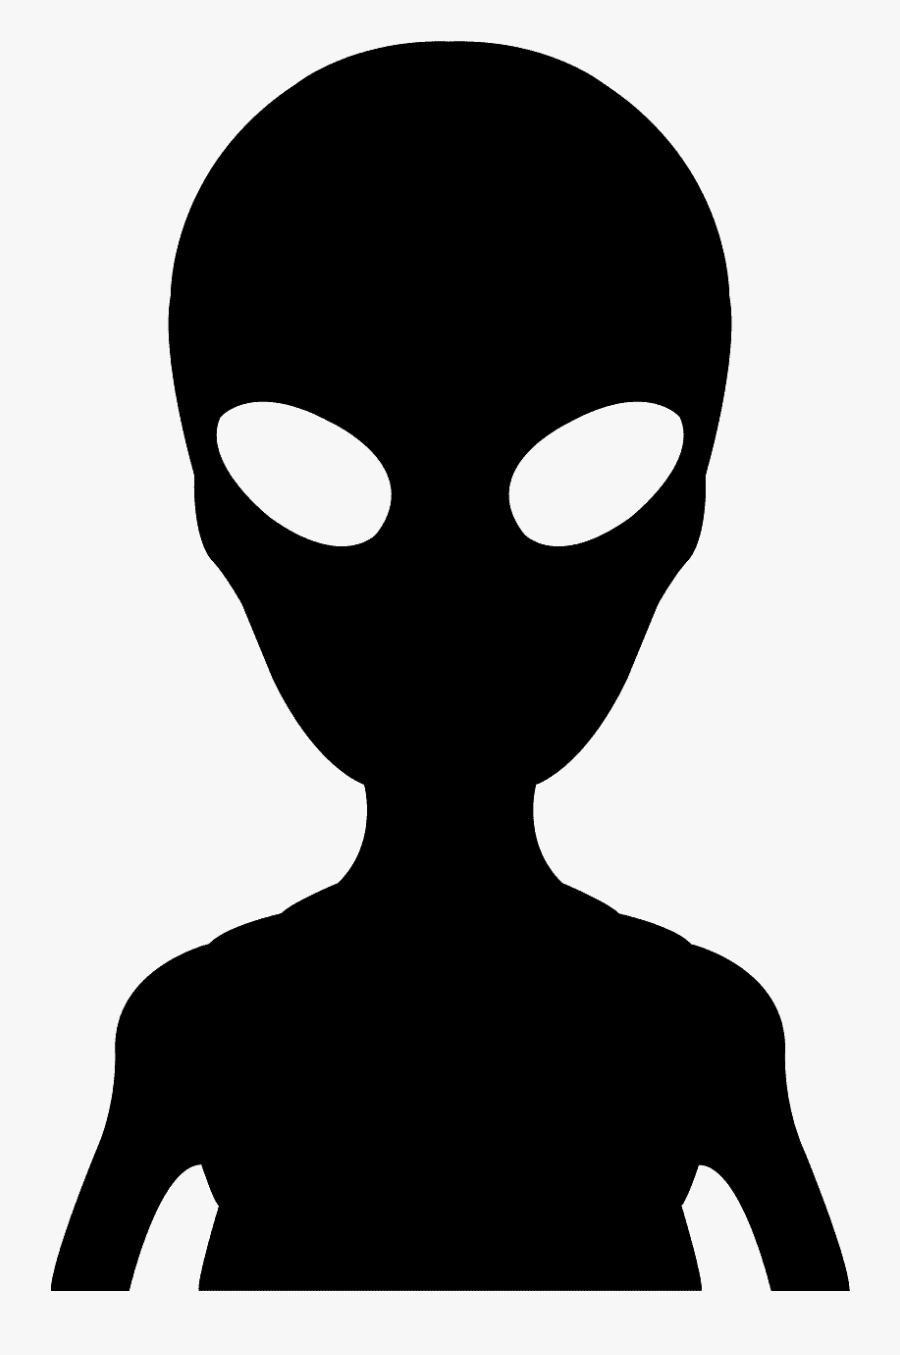 Alien Silhouette Png, Transparent Clipart